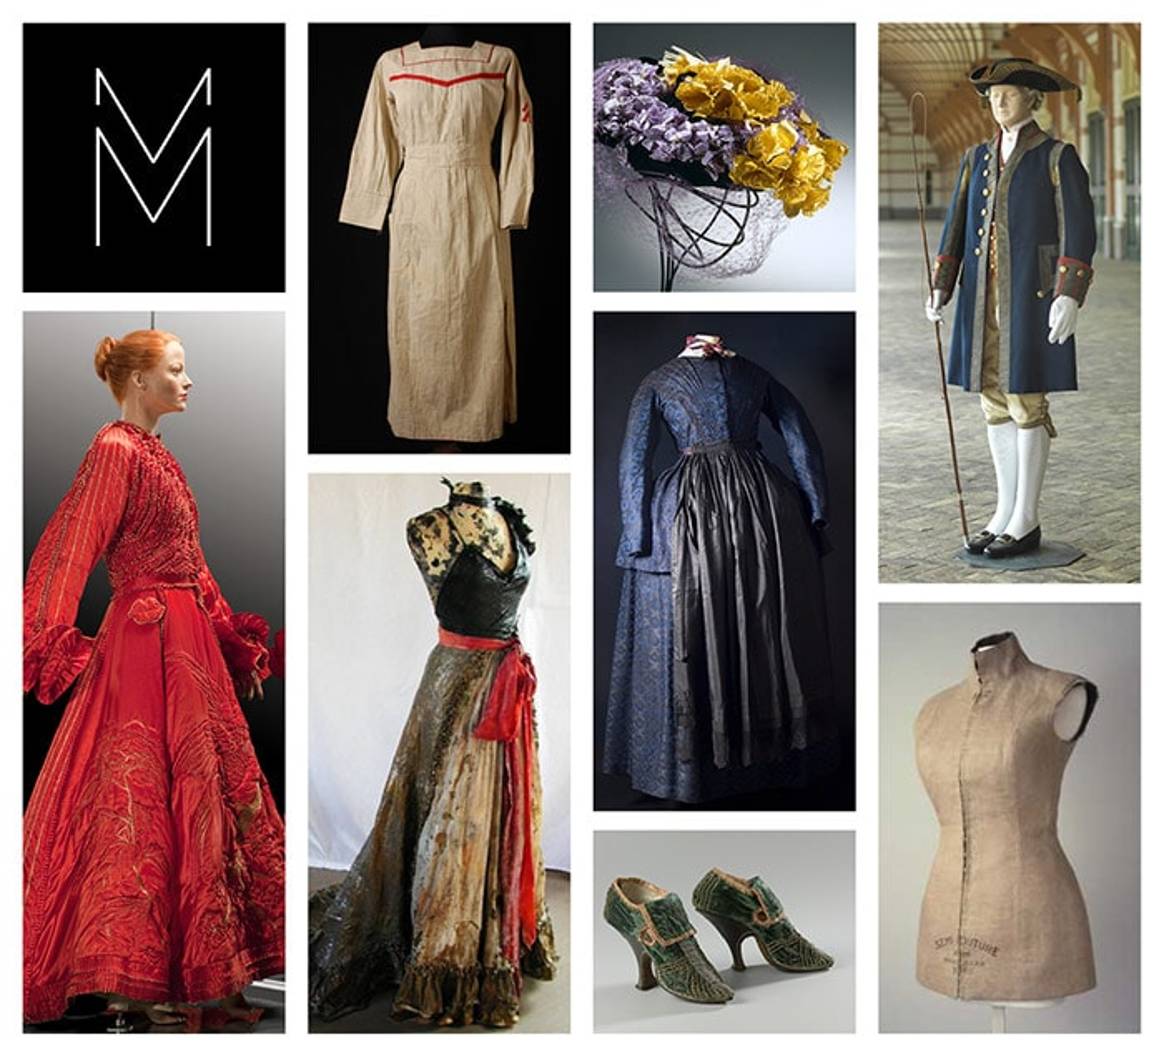 Samenwerking zeven musea: 'Modemuze is een groeidiamant'